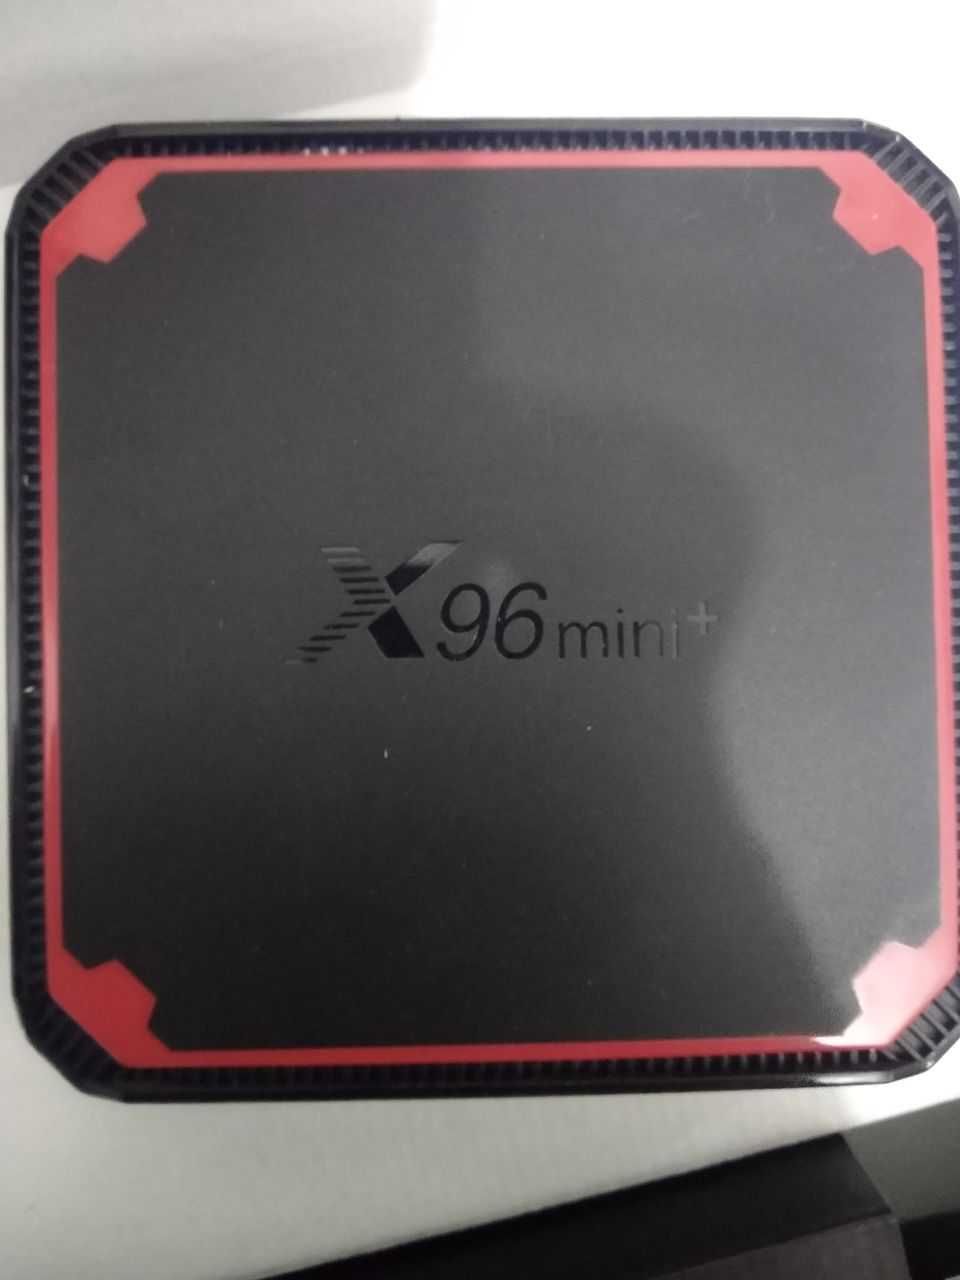 X96 mini+ smart tv приставкса